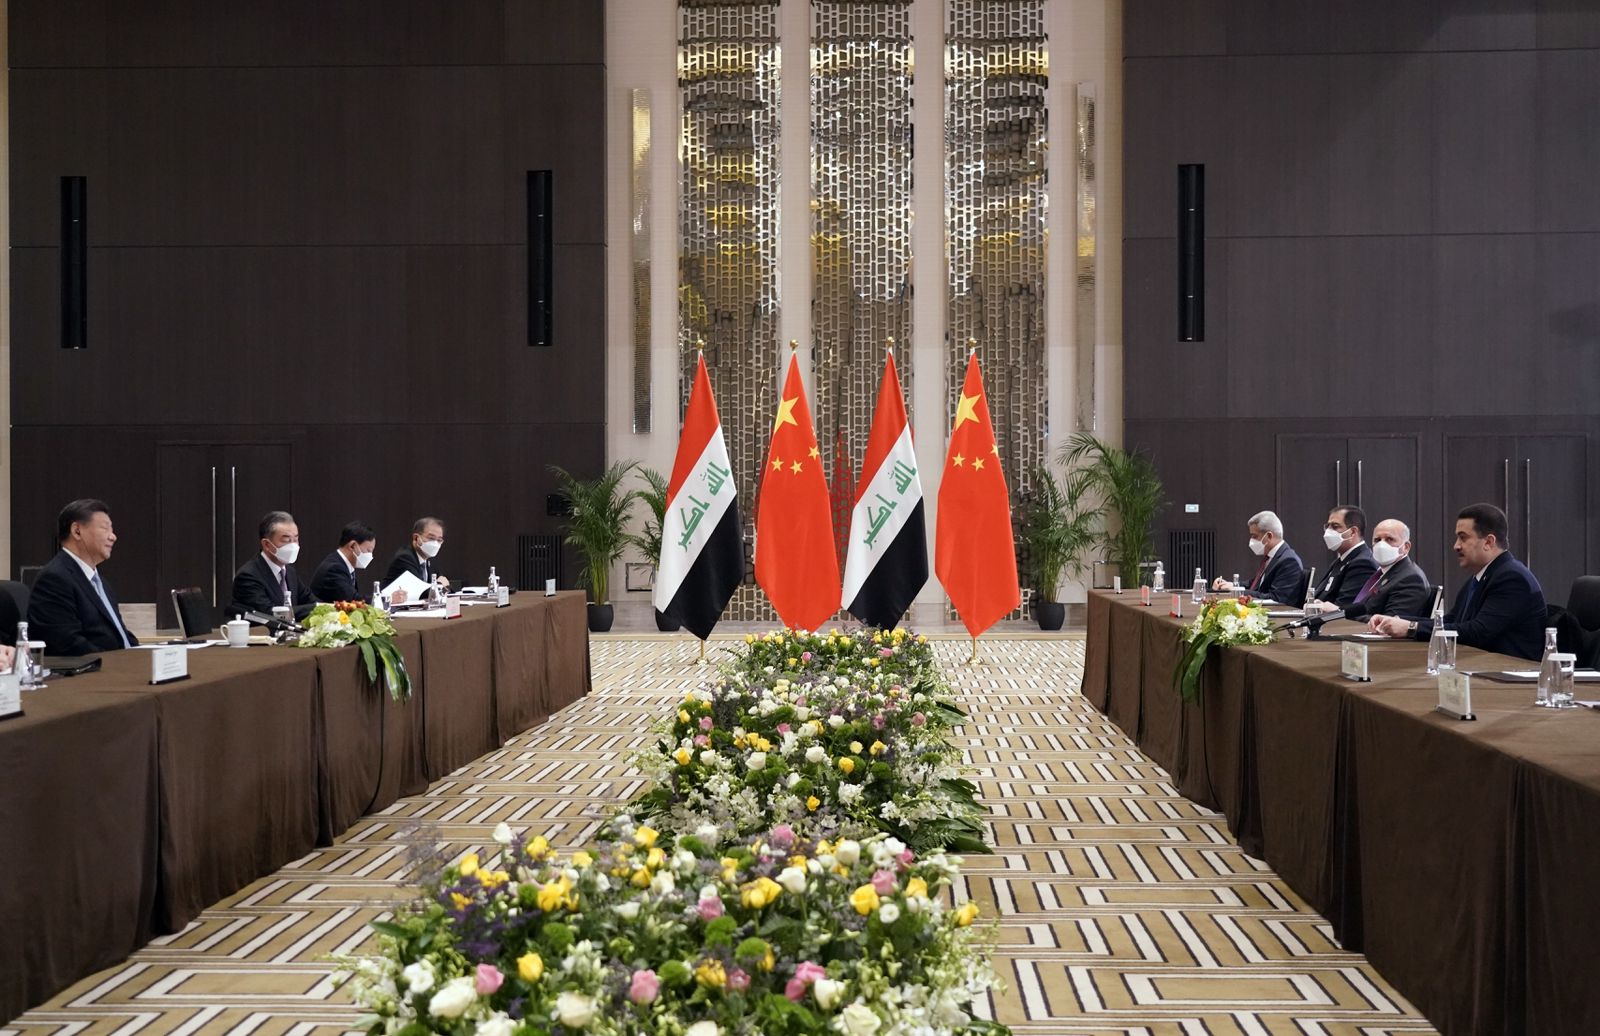 الرئيس الصيني:بلادي تدعم أمن وسيادة العراق واستقراره